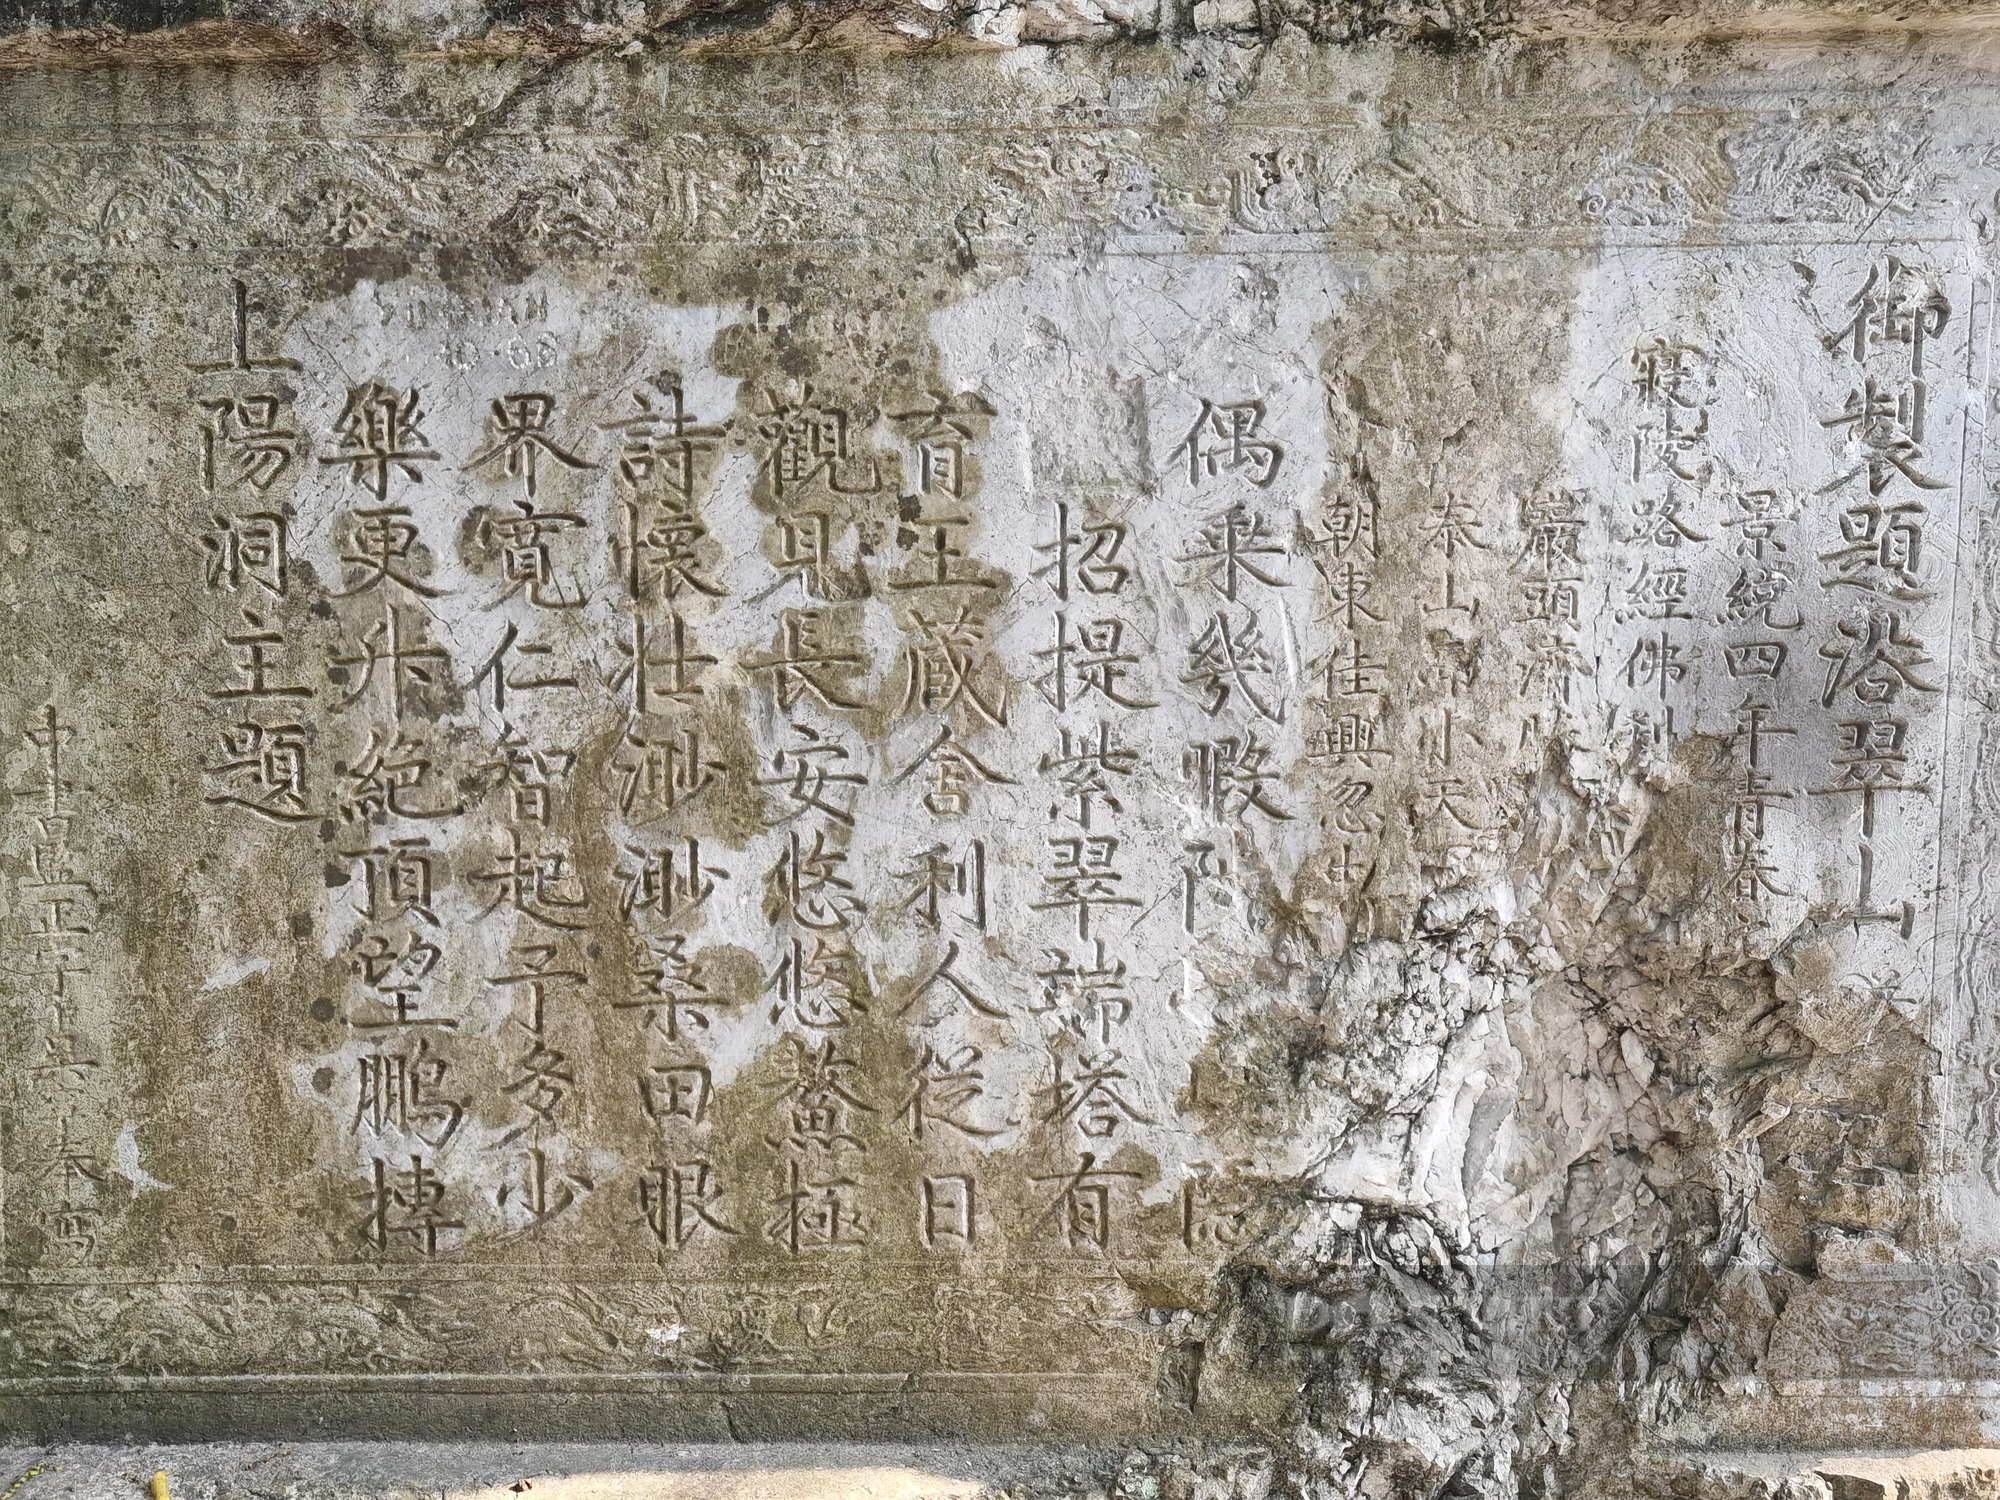 Khám phá núi Non Nước với “bảo tàng thơ” khắc trên vách núi ở Ninh Bình - Ảnh 6.